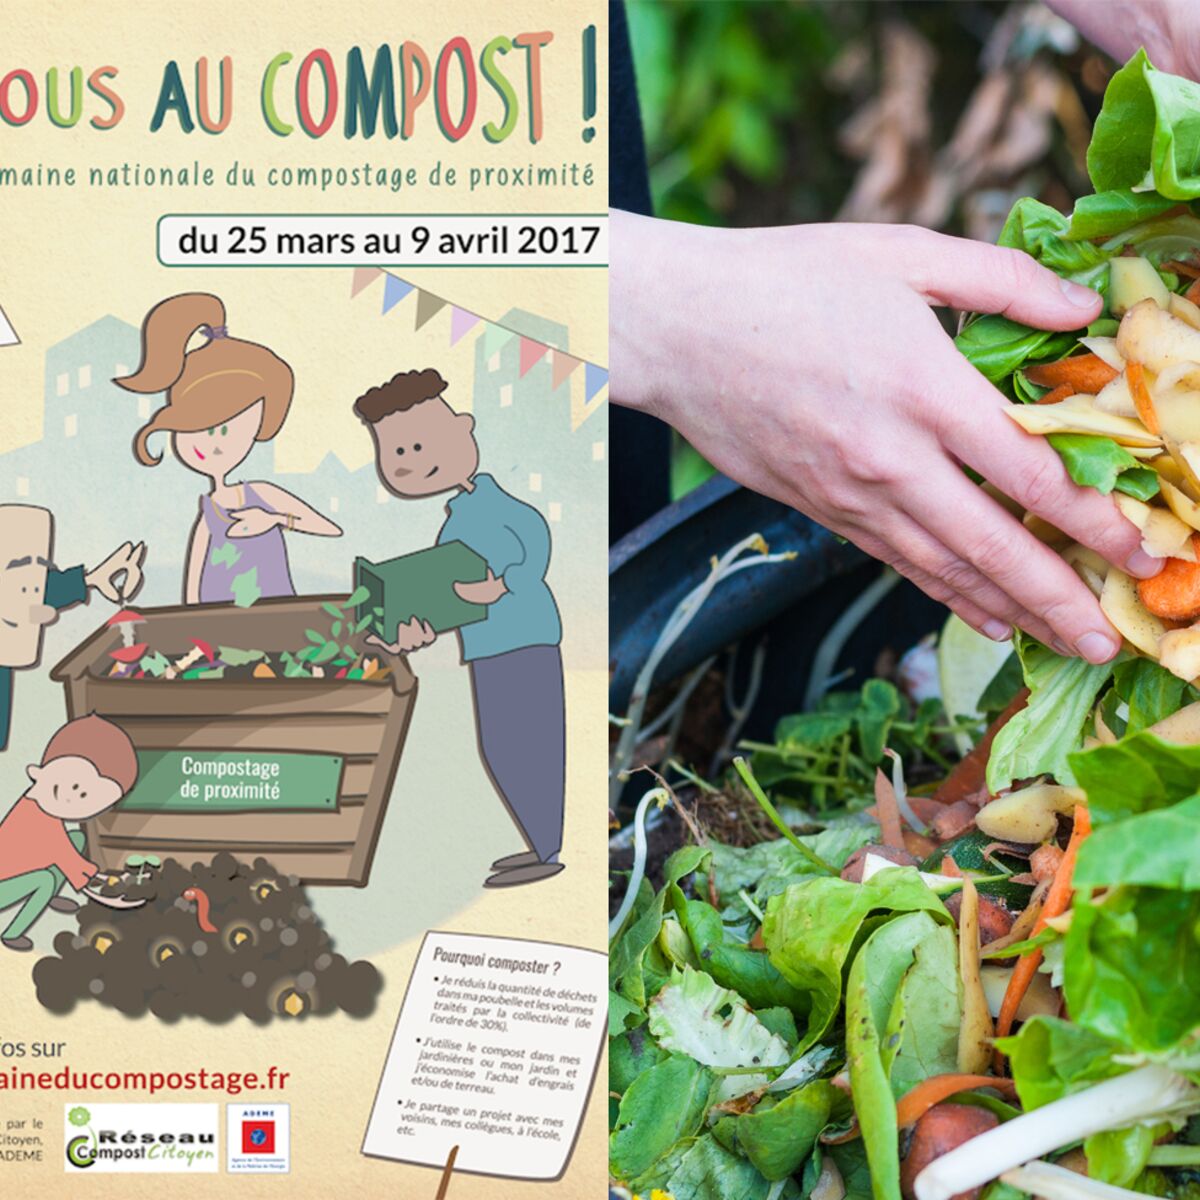 Le compost - Jardins de France